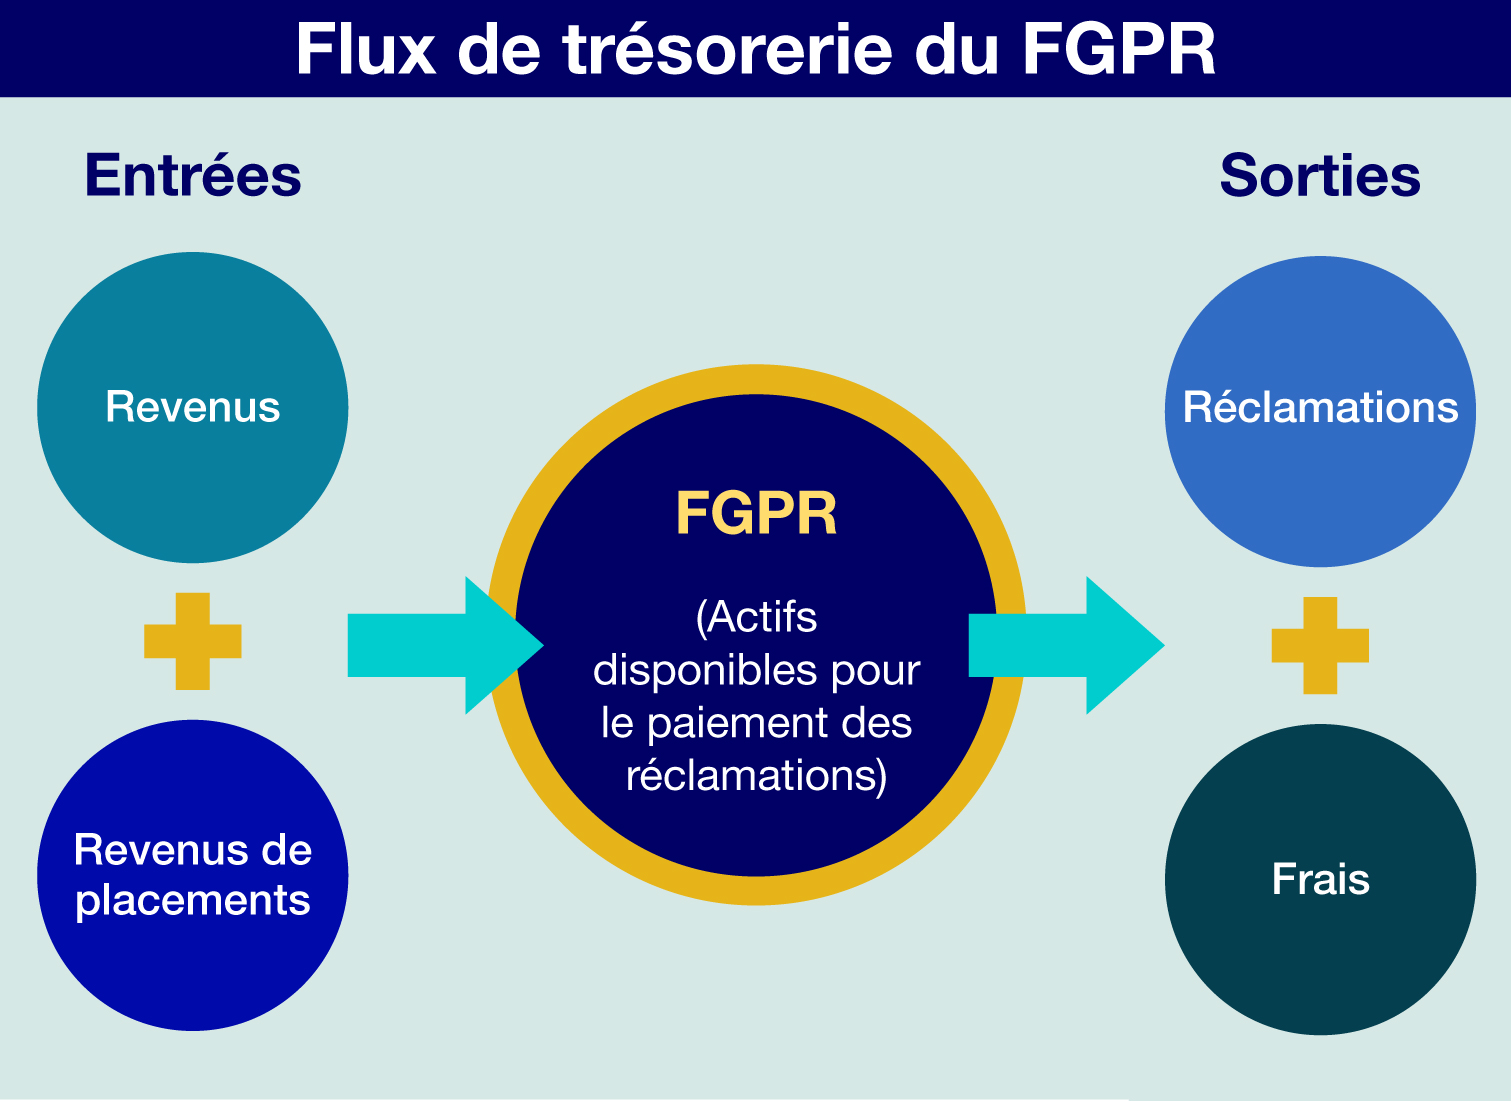 Flux De Trésorerie du FGPR